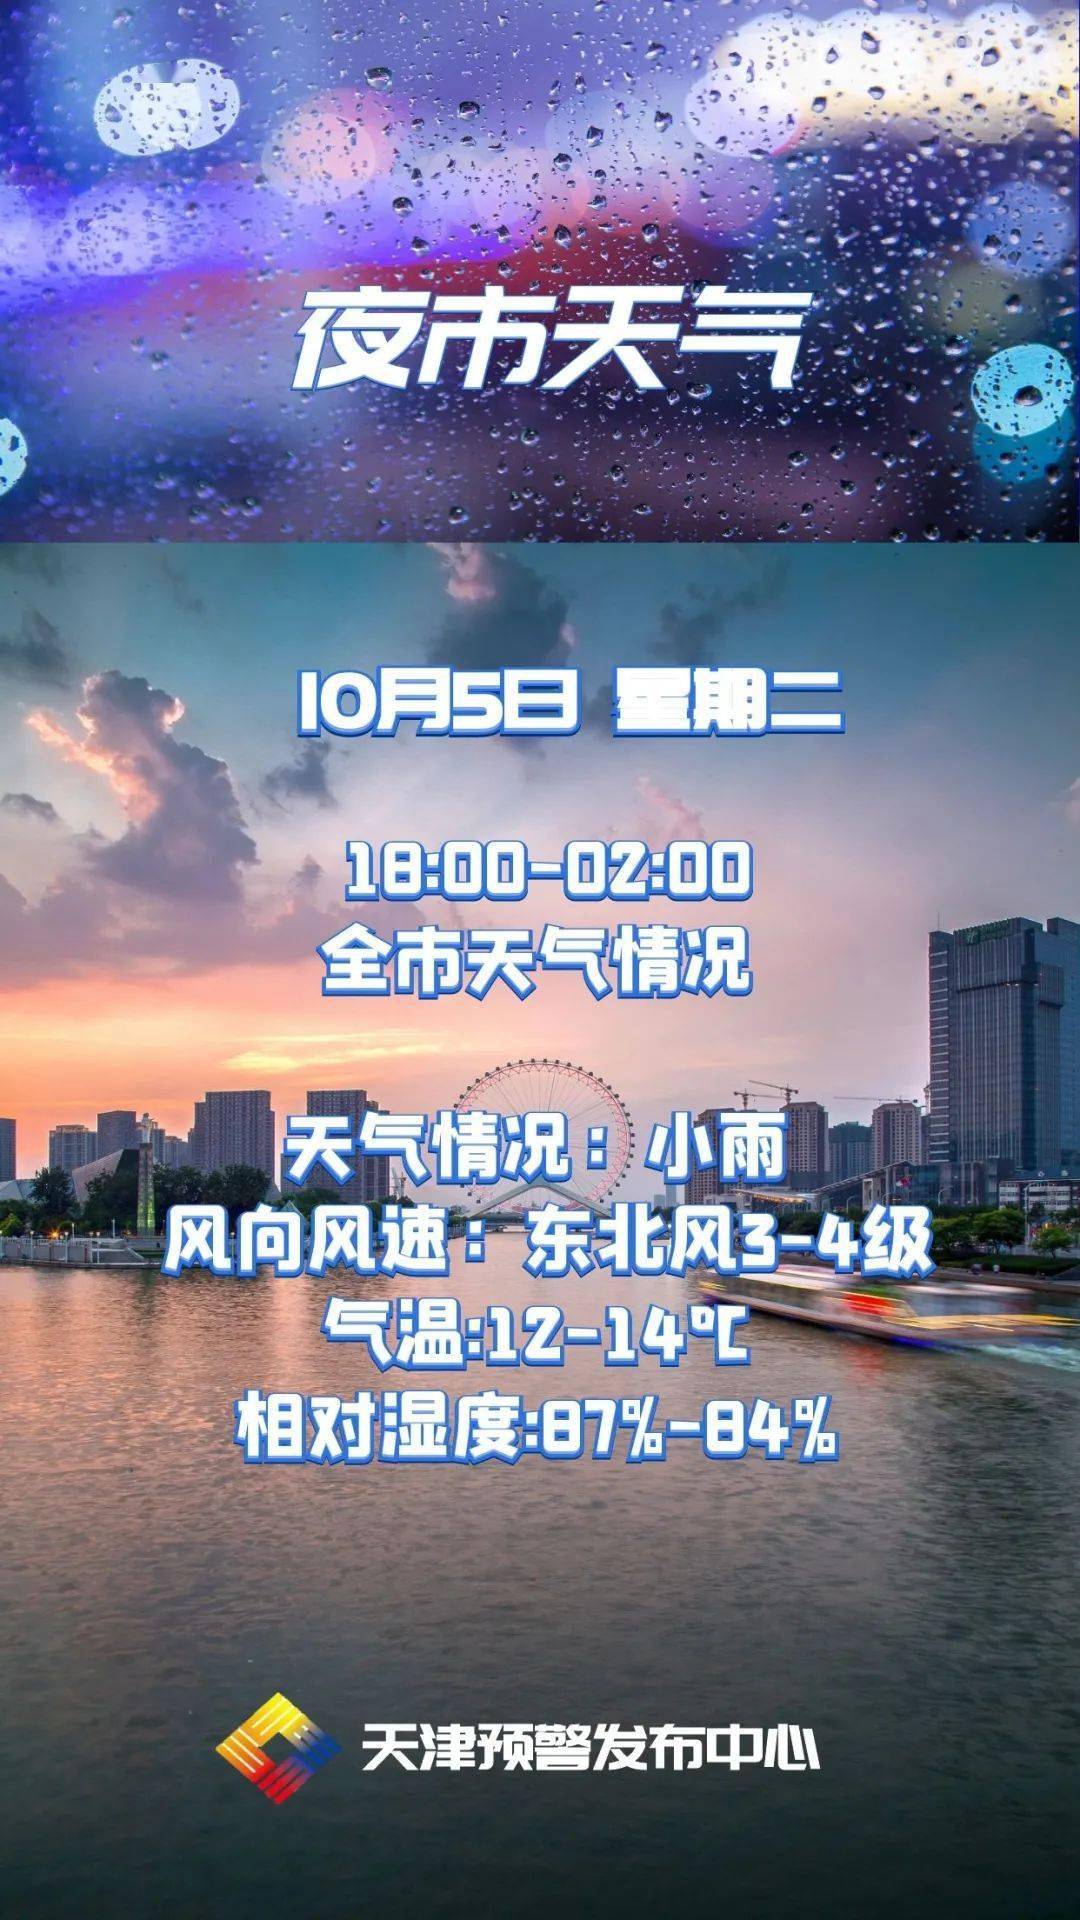 【夜市天气】意式风情区夜市提醒您收看10月5日天津夜生活天气预报